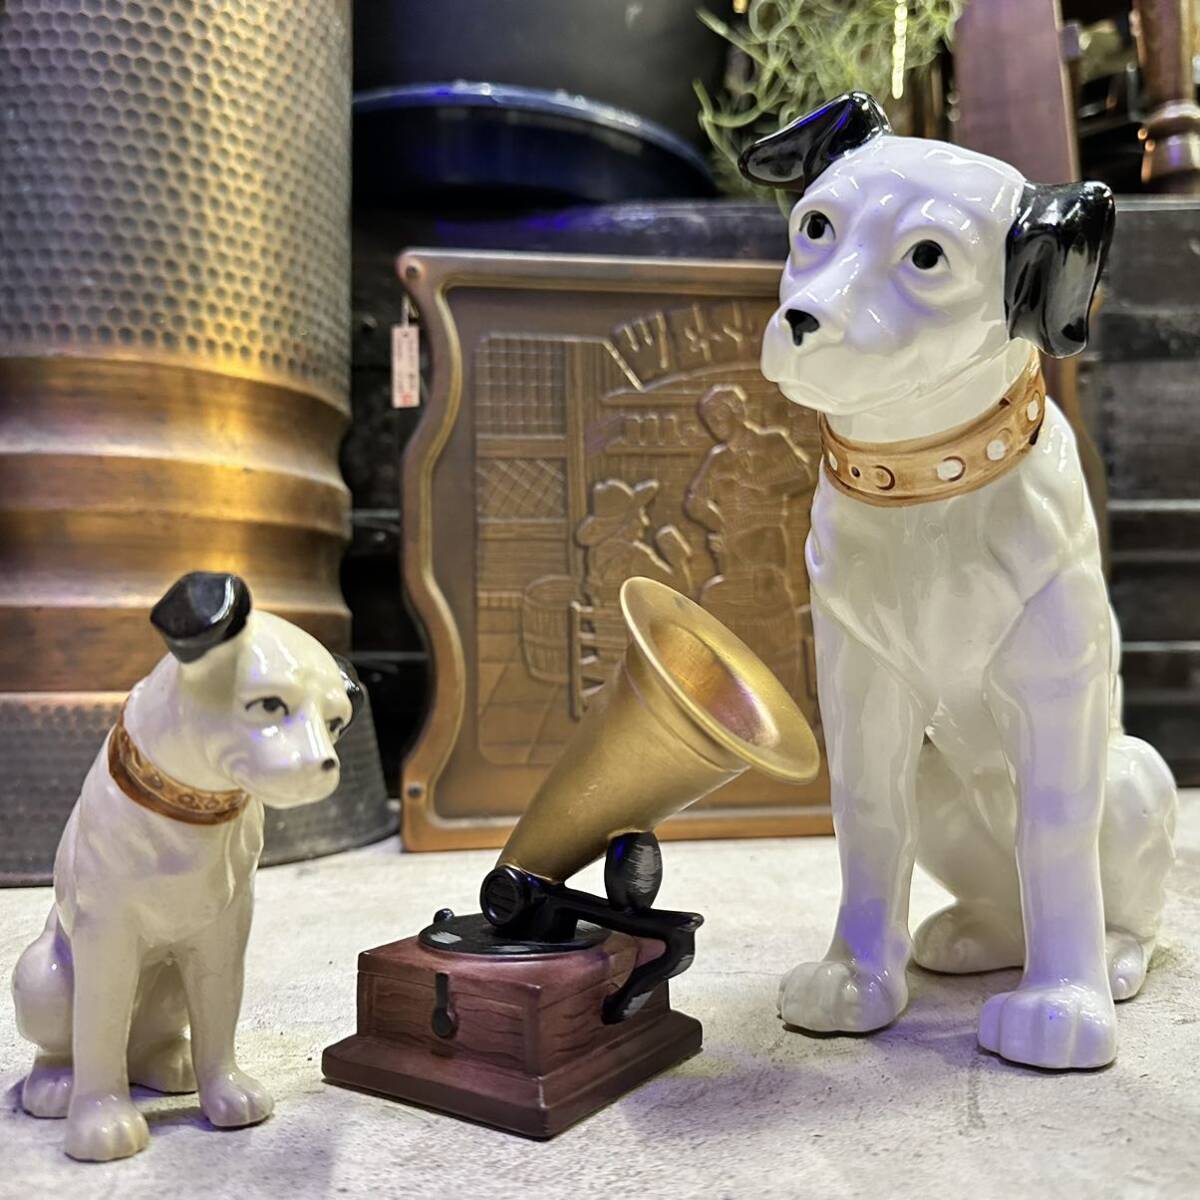 ビクター犬 ニッパー犬 Victor 蓄音機 陶器製 置物 オブジェ 昭和レトロ ヴィンテージ雑貨 アンティーク雑貨 インテリアの画像1